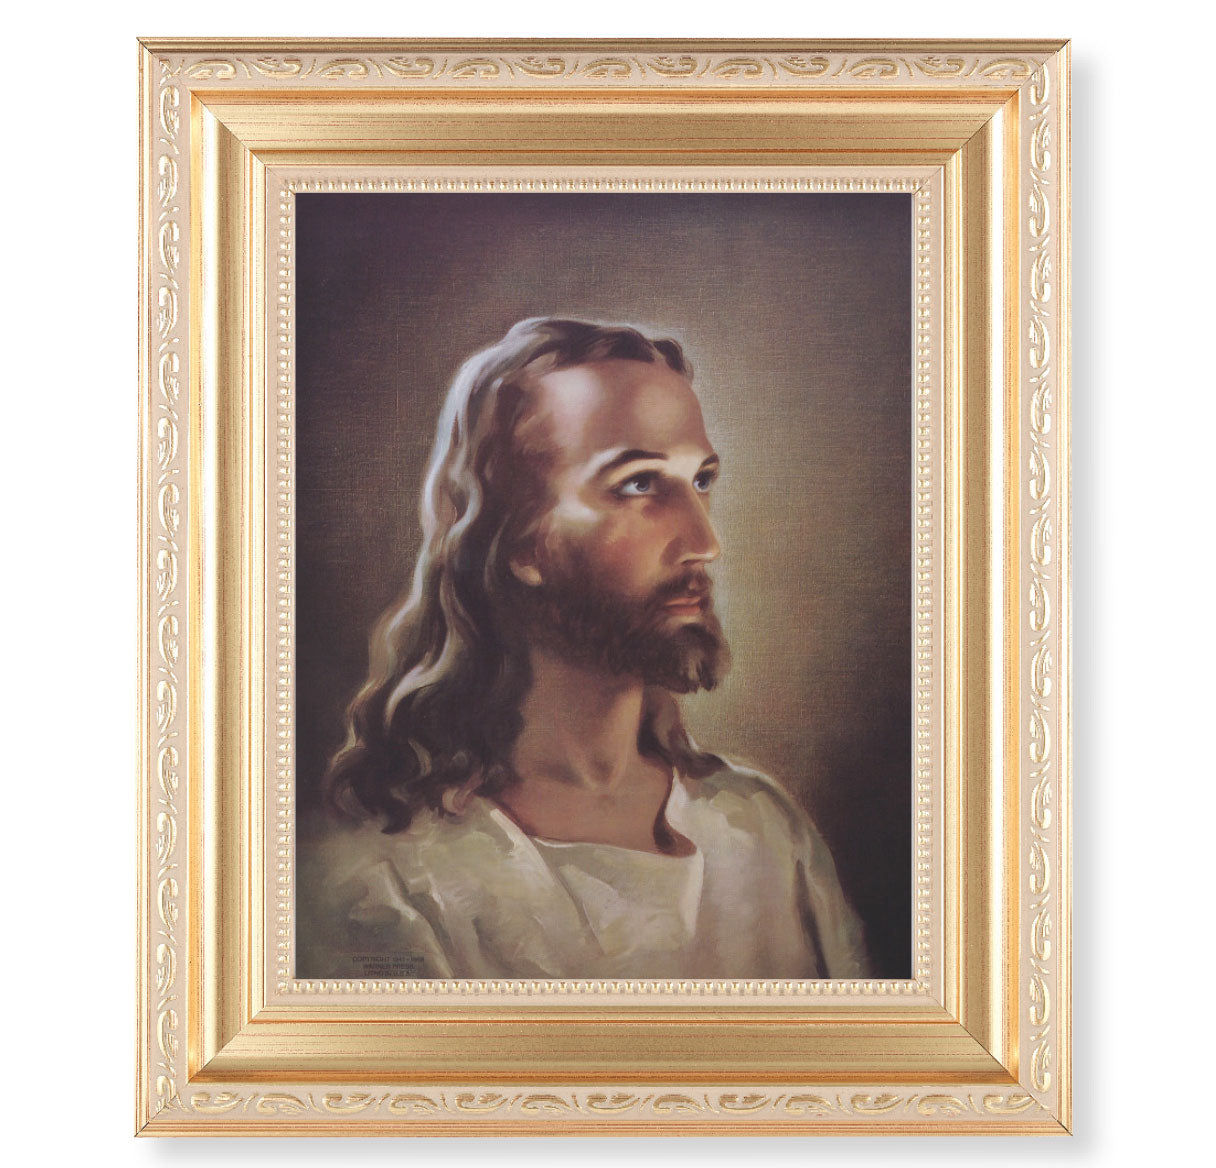 Head of Christ Gold Framed Art